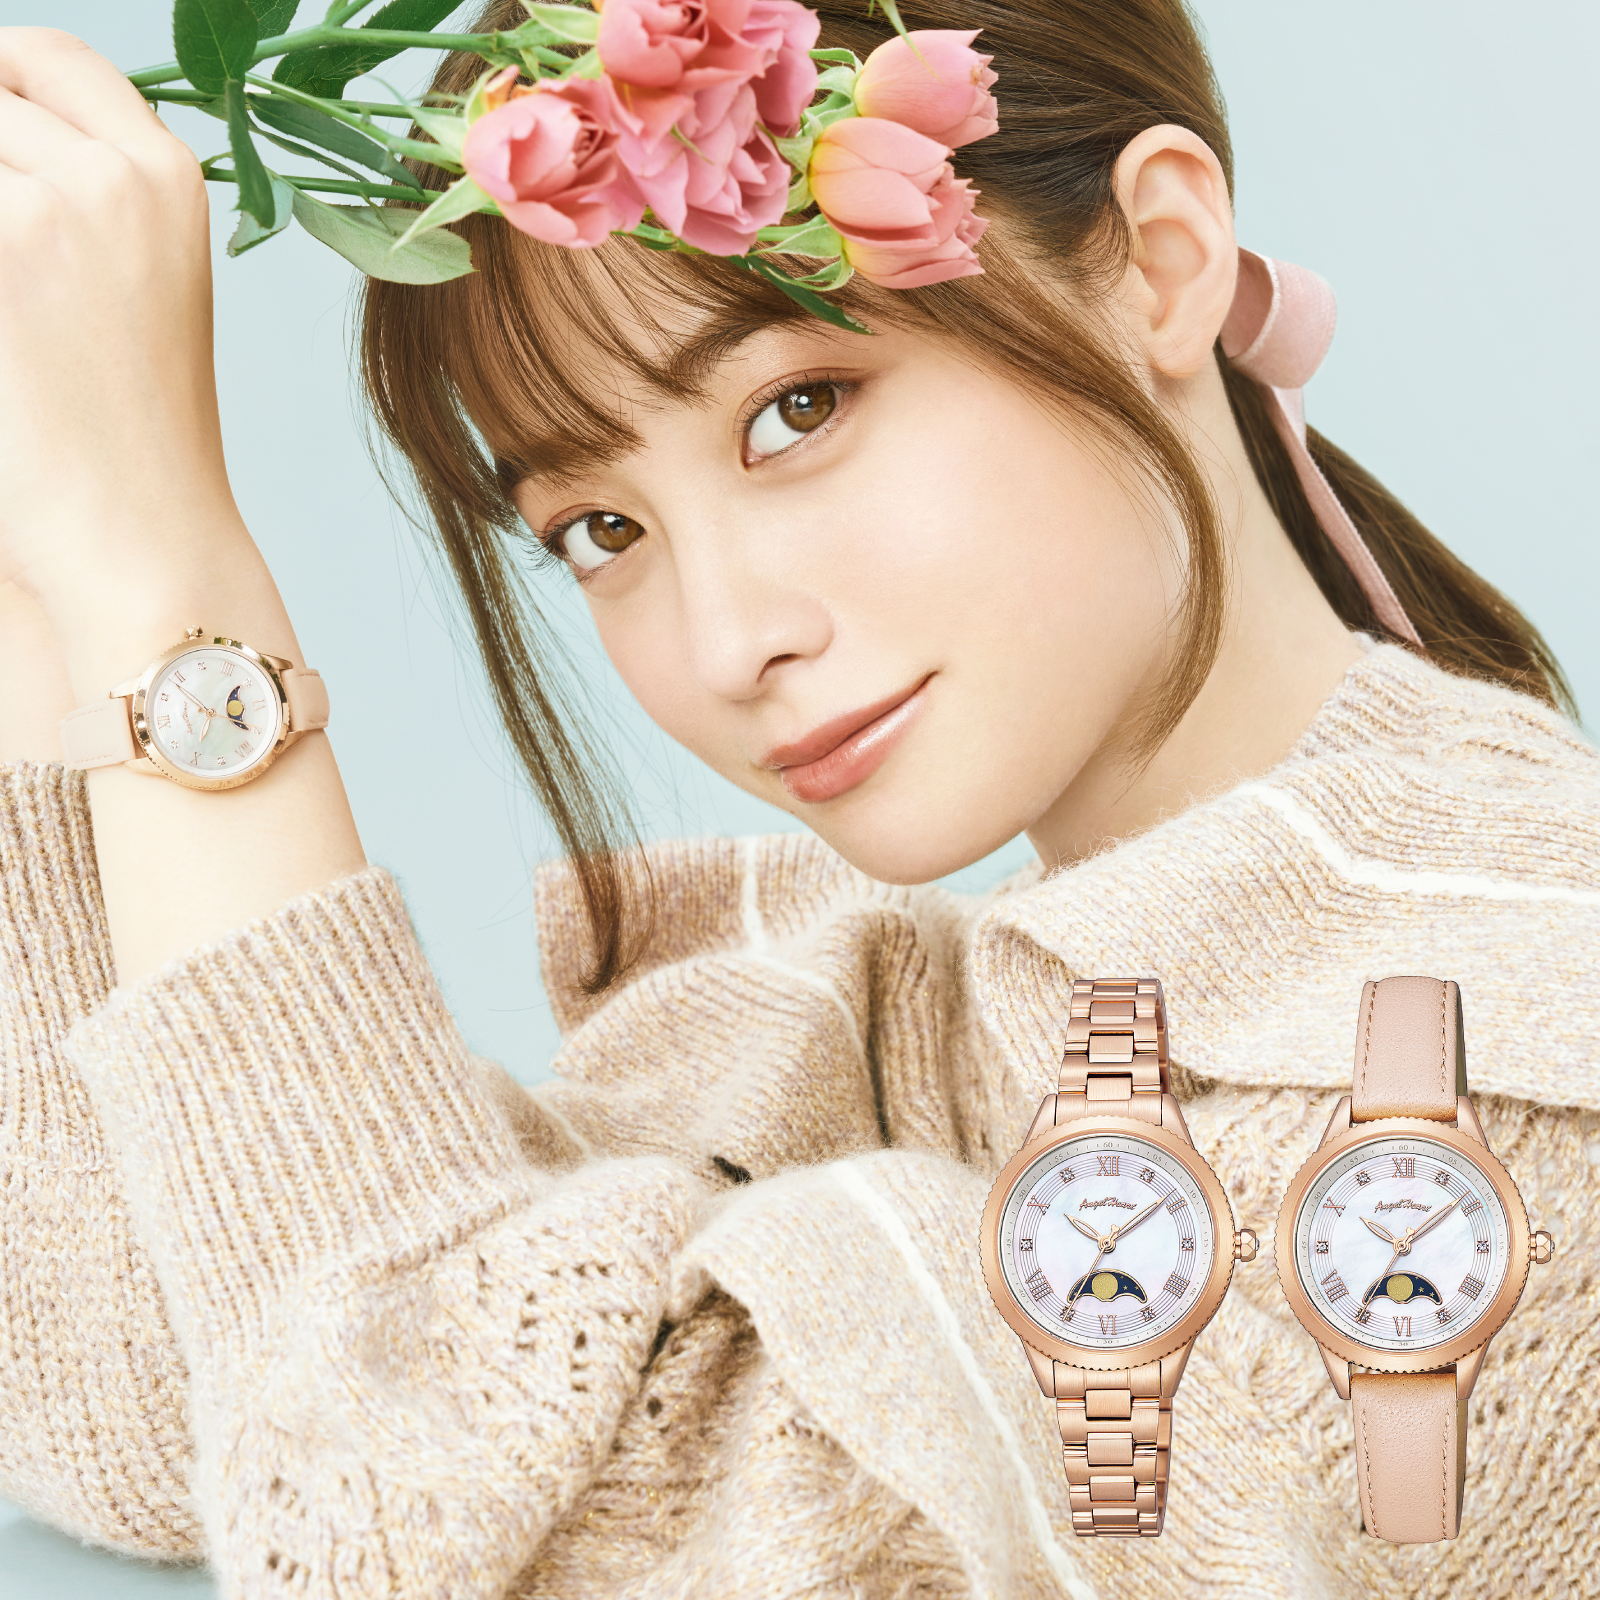 7,200円Angel Heart 腕時計